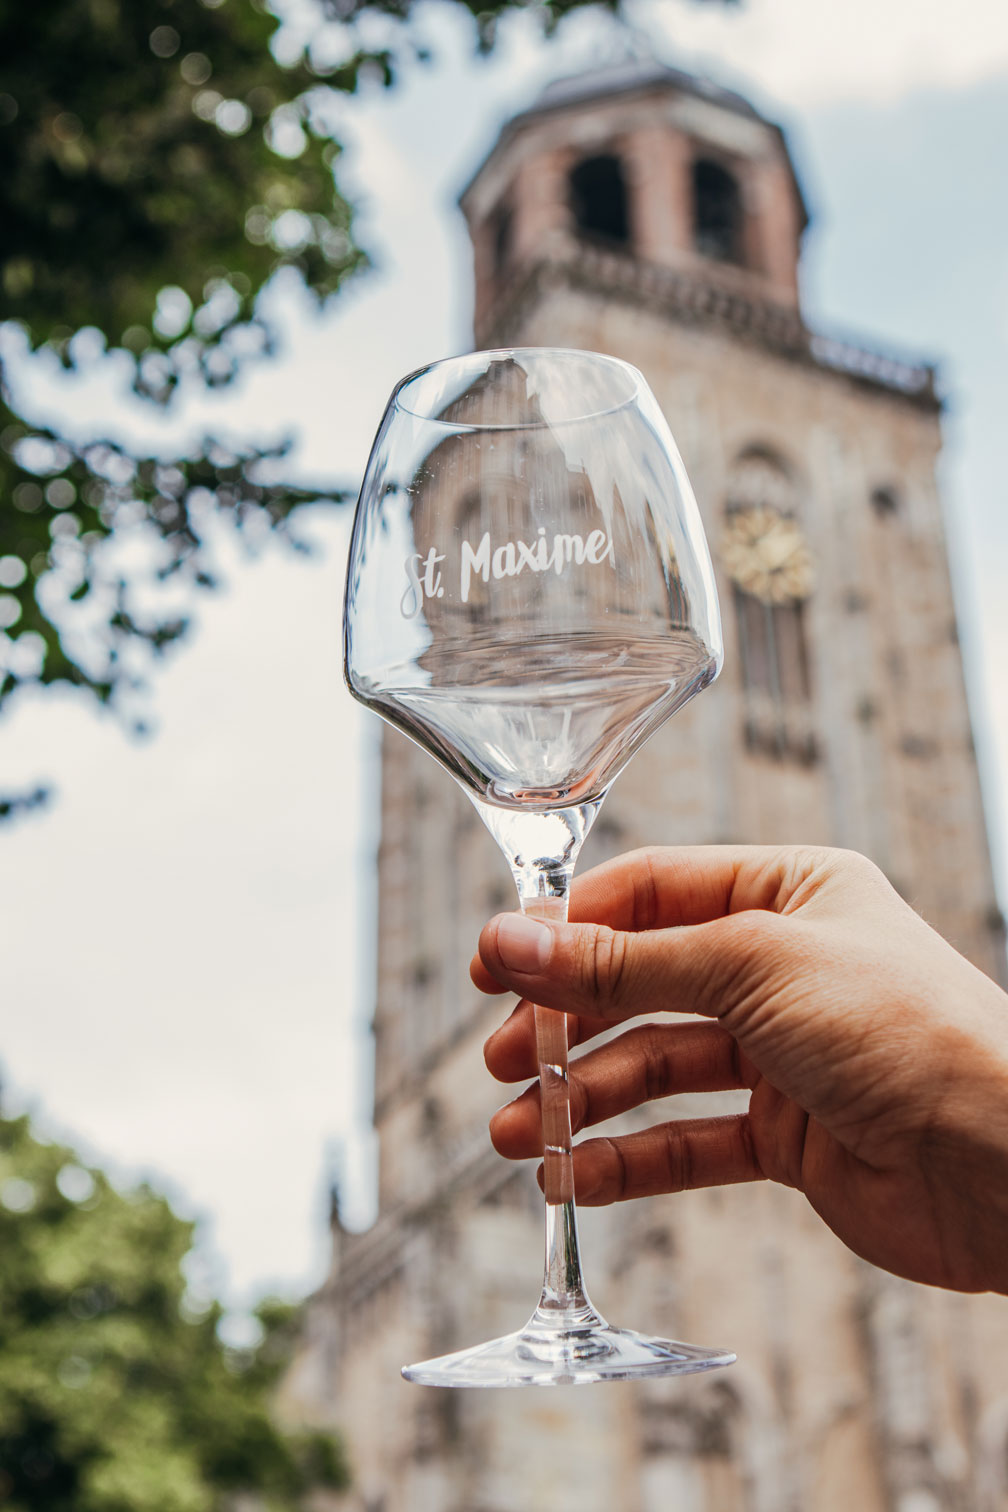 Een van de gezelligste plekken in Deventer om een wijntje te drinken is St. Maxime. Aan de voet van de Lebuïnuskerk. In de zomermaanden heerlijk op het terras. Of in de winter knus binnen.